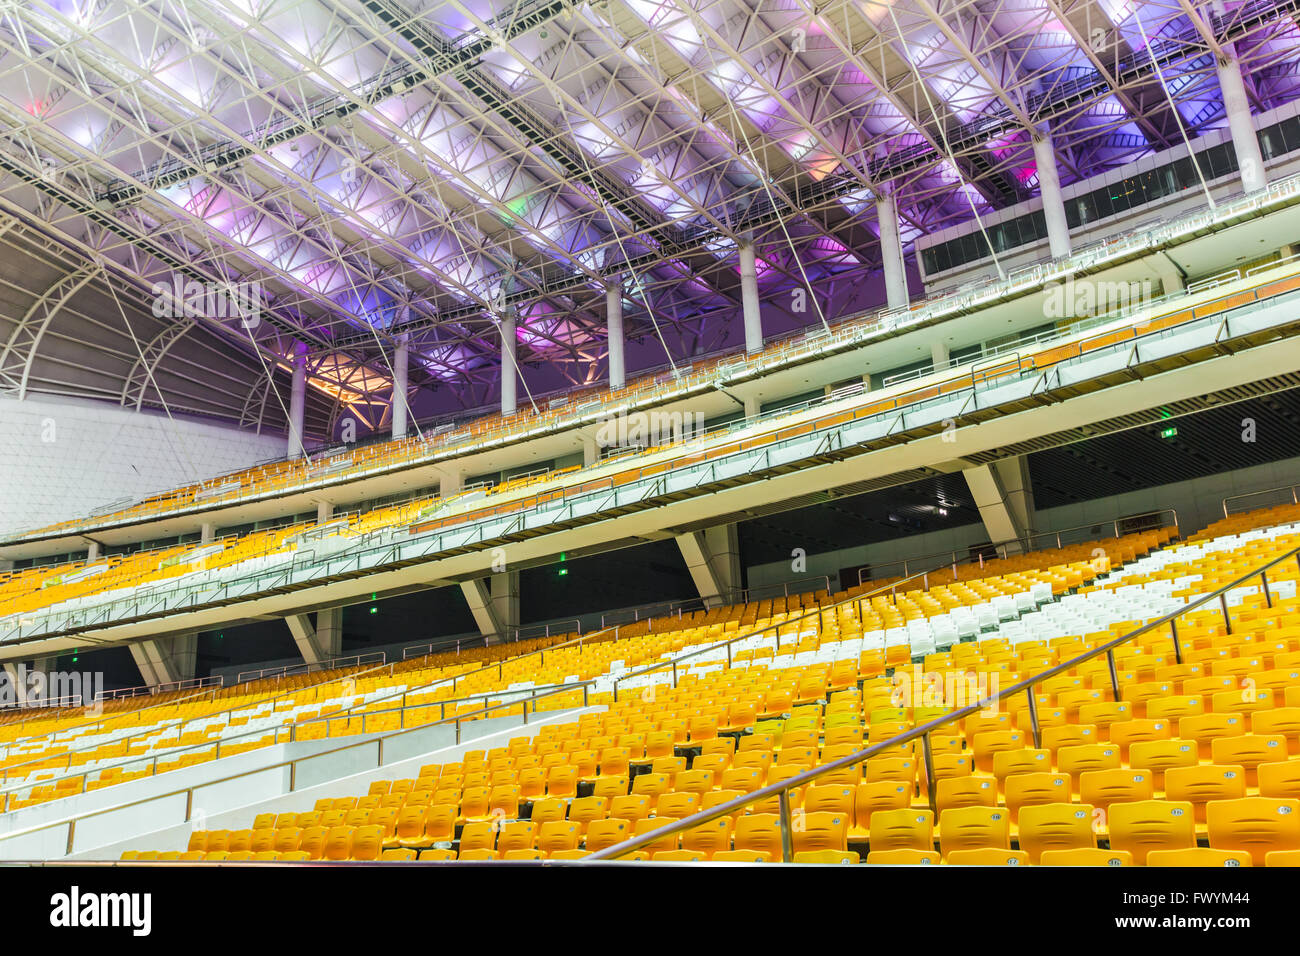 Haixinsha Guangzhou Asian Games venues panorama Stock Photo